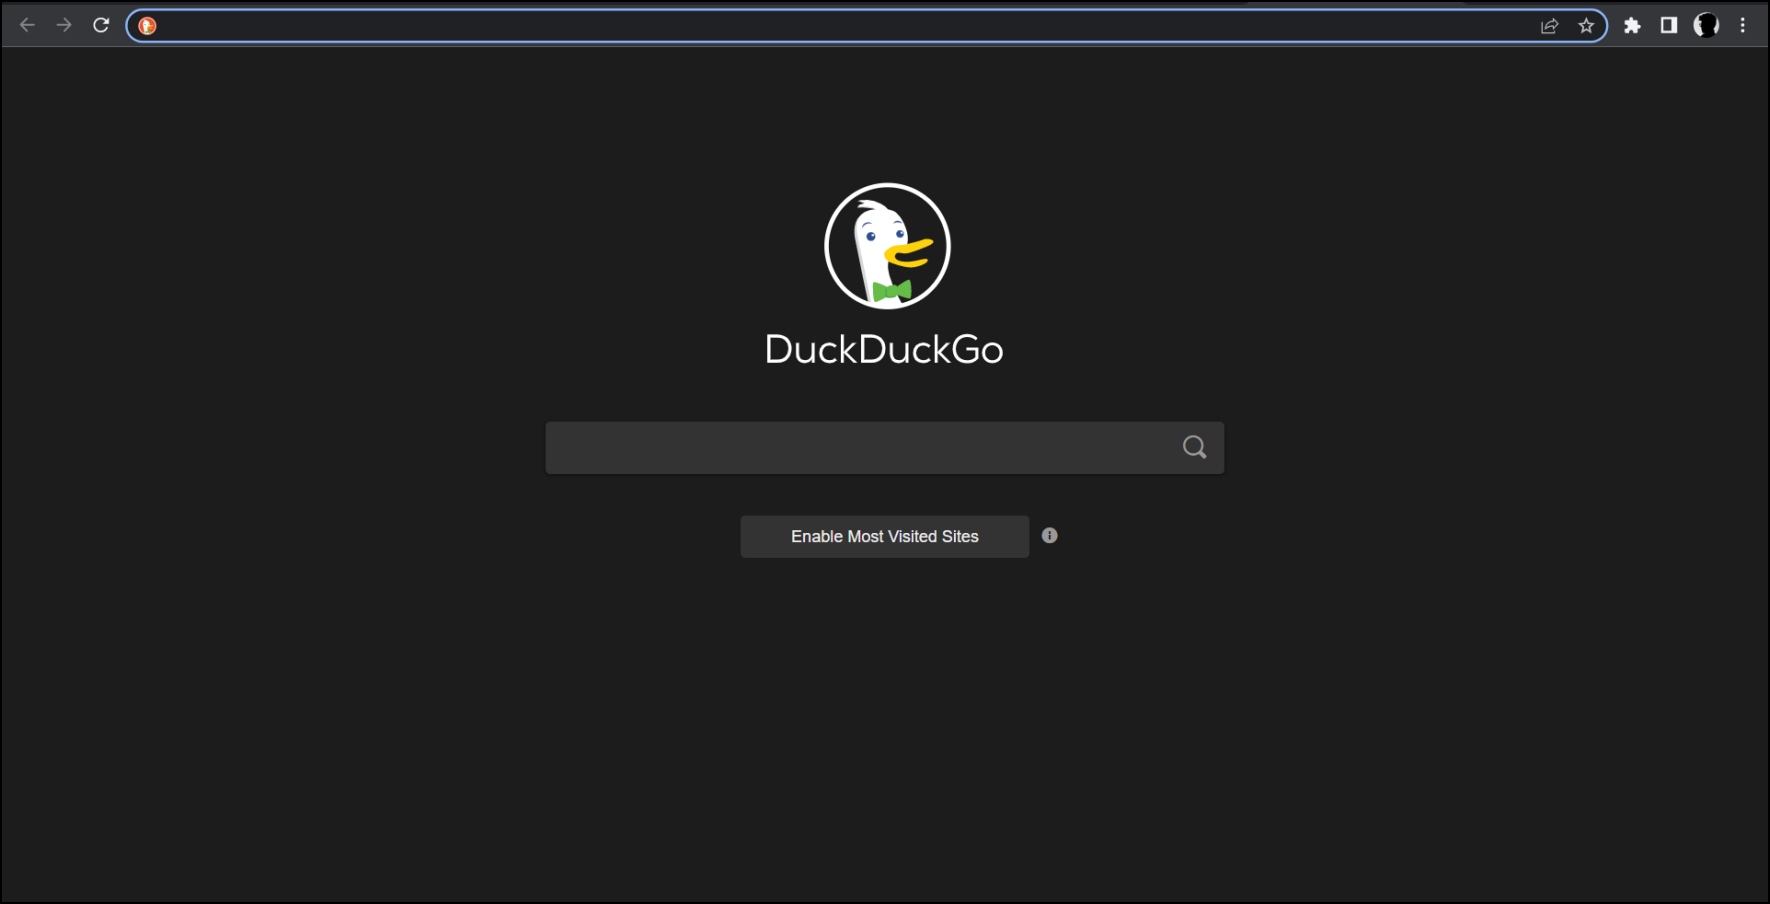 "DuckDuckGo: